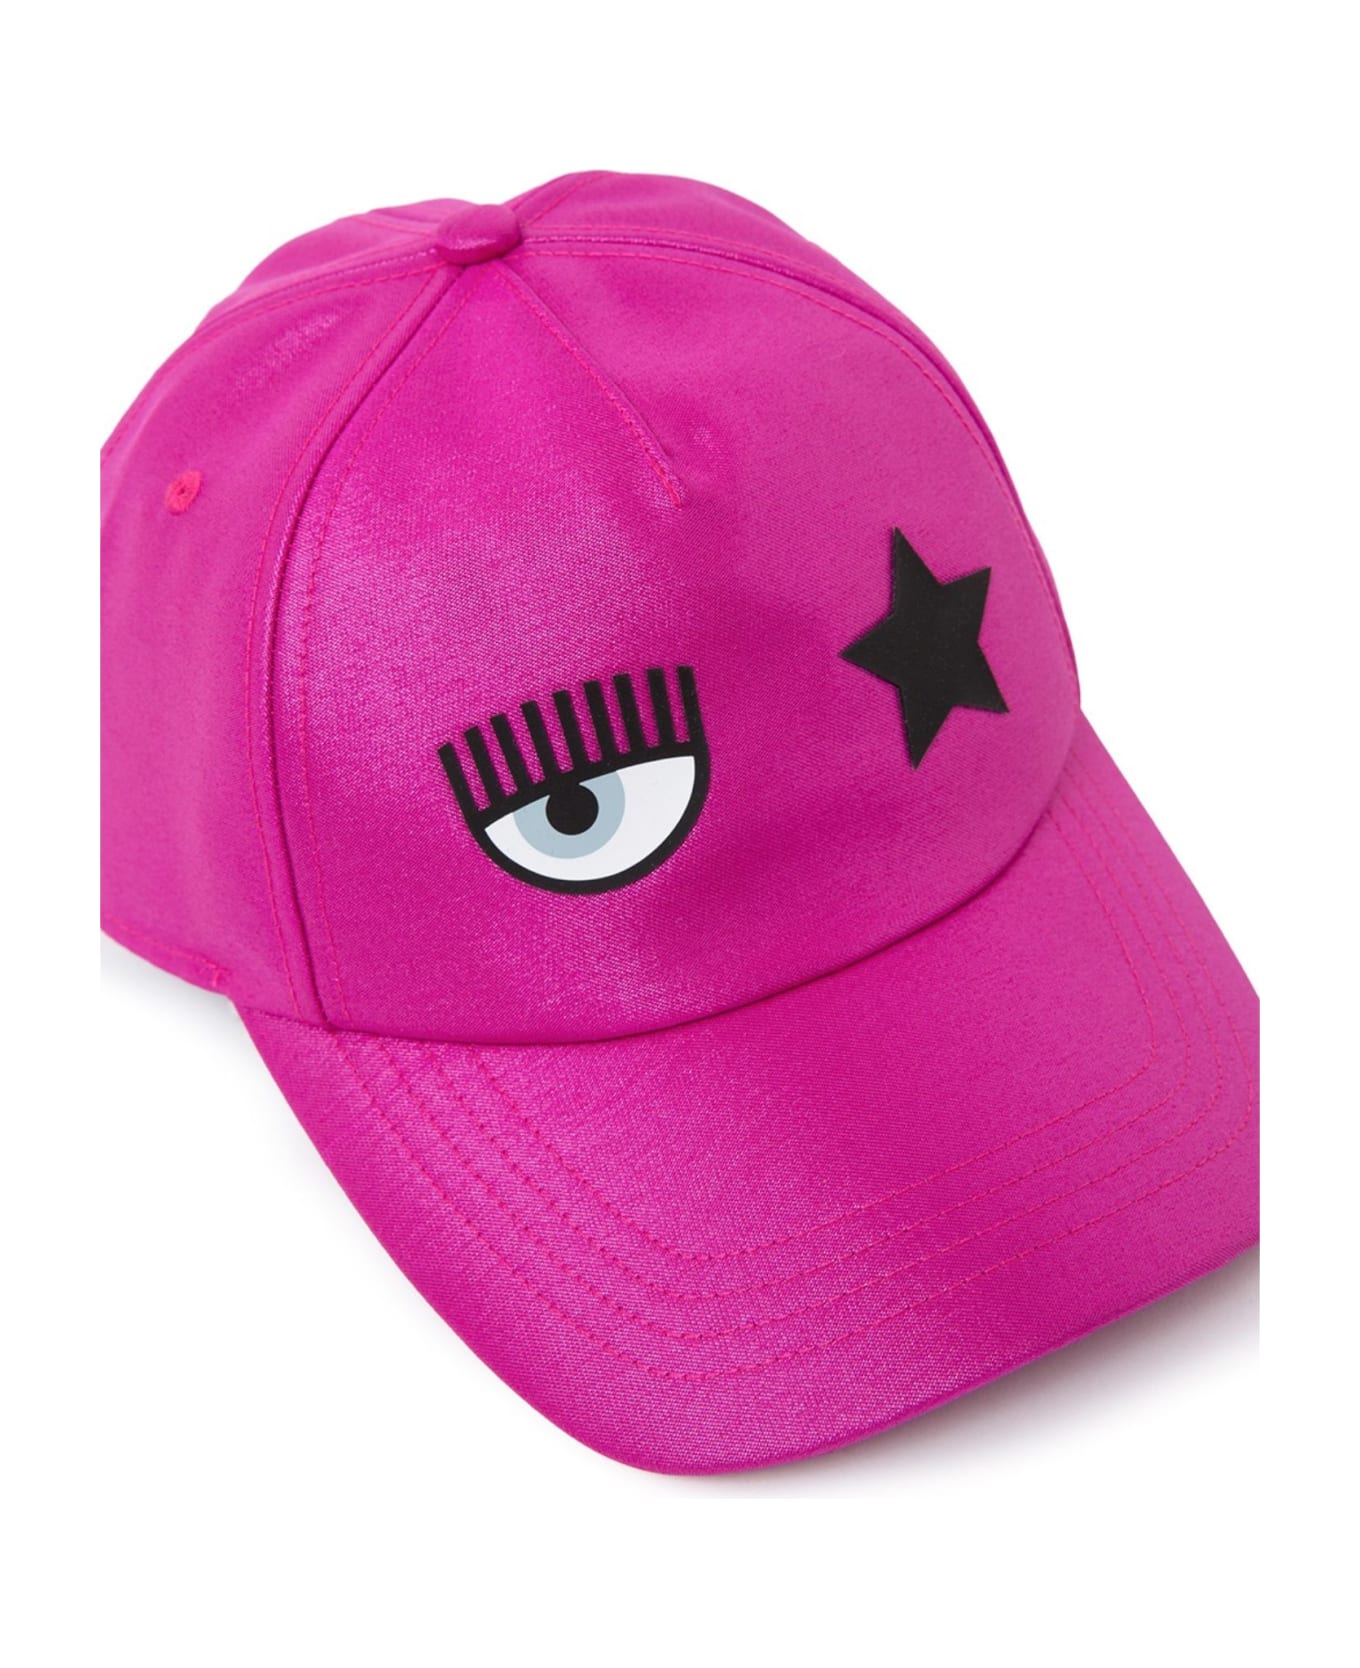 Chiara Ferragni Women's Hat - Pink